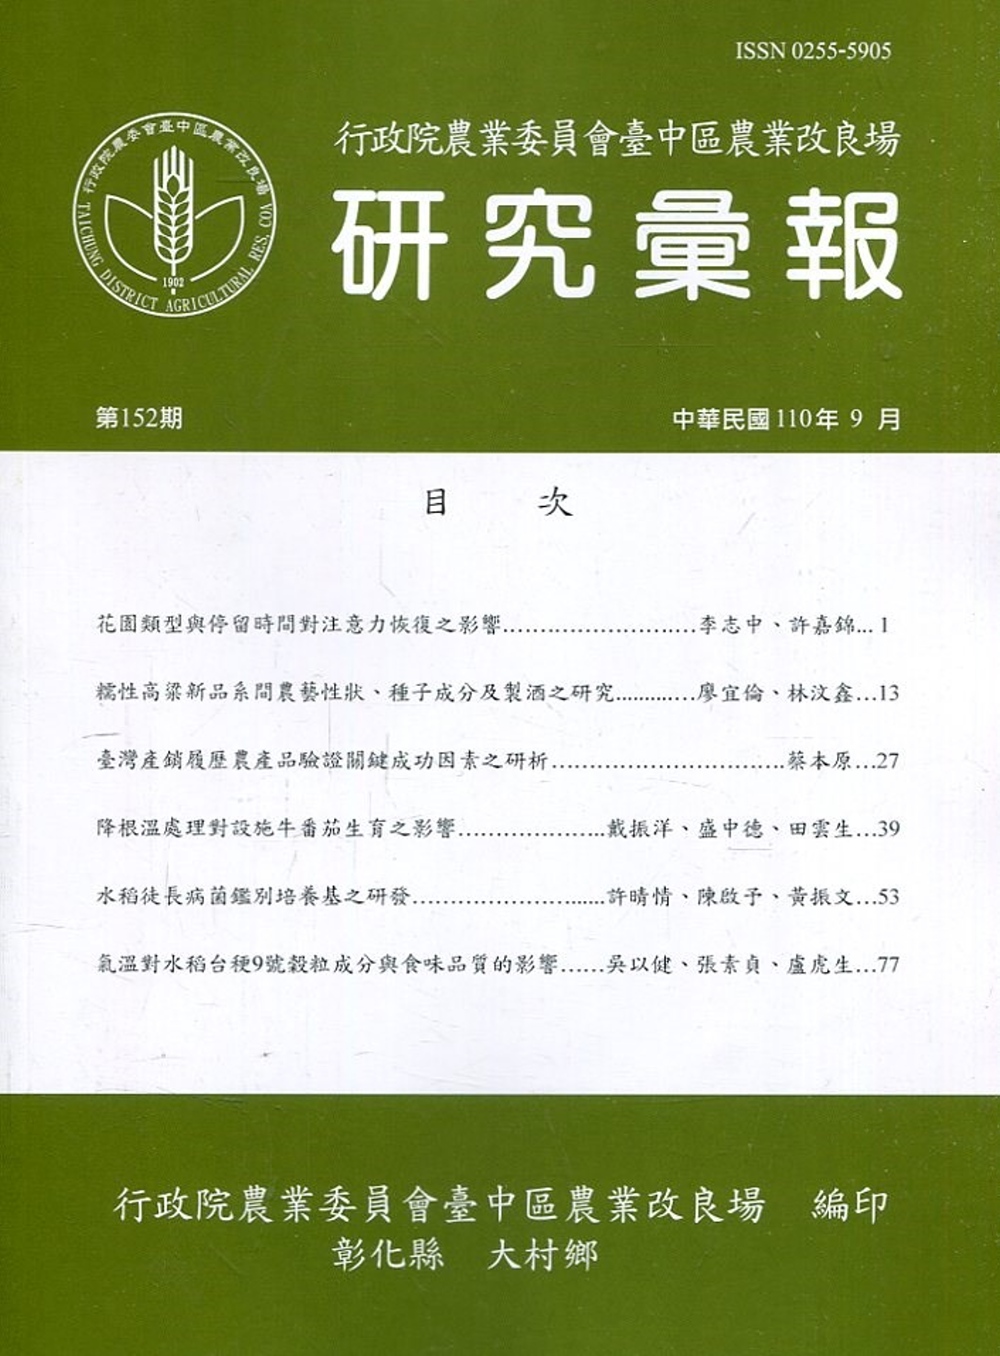 研究彙報152期(110/09)行政院農業委員會臺中區農業改良場